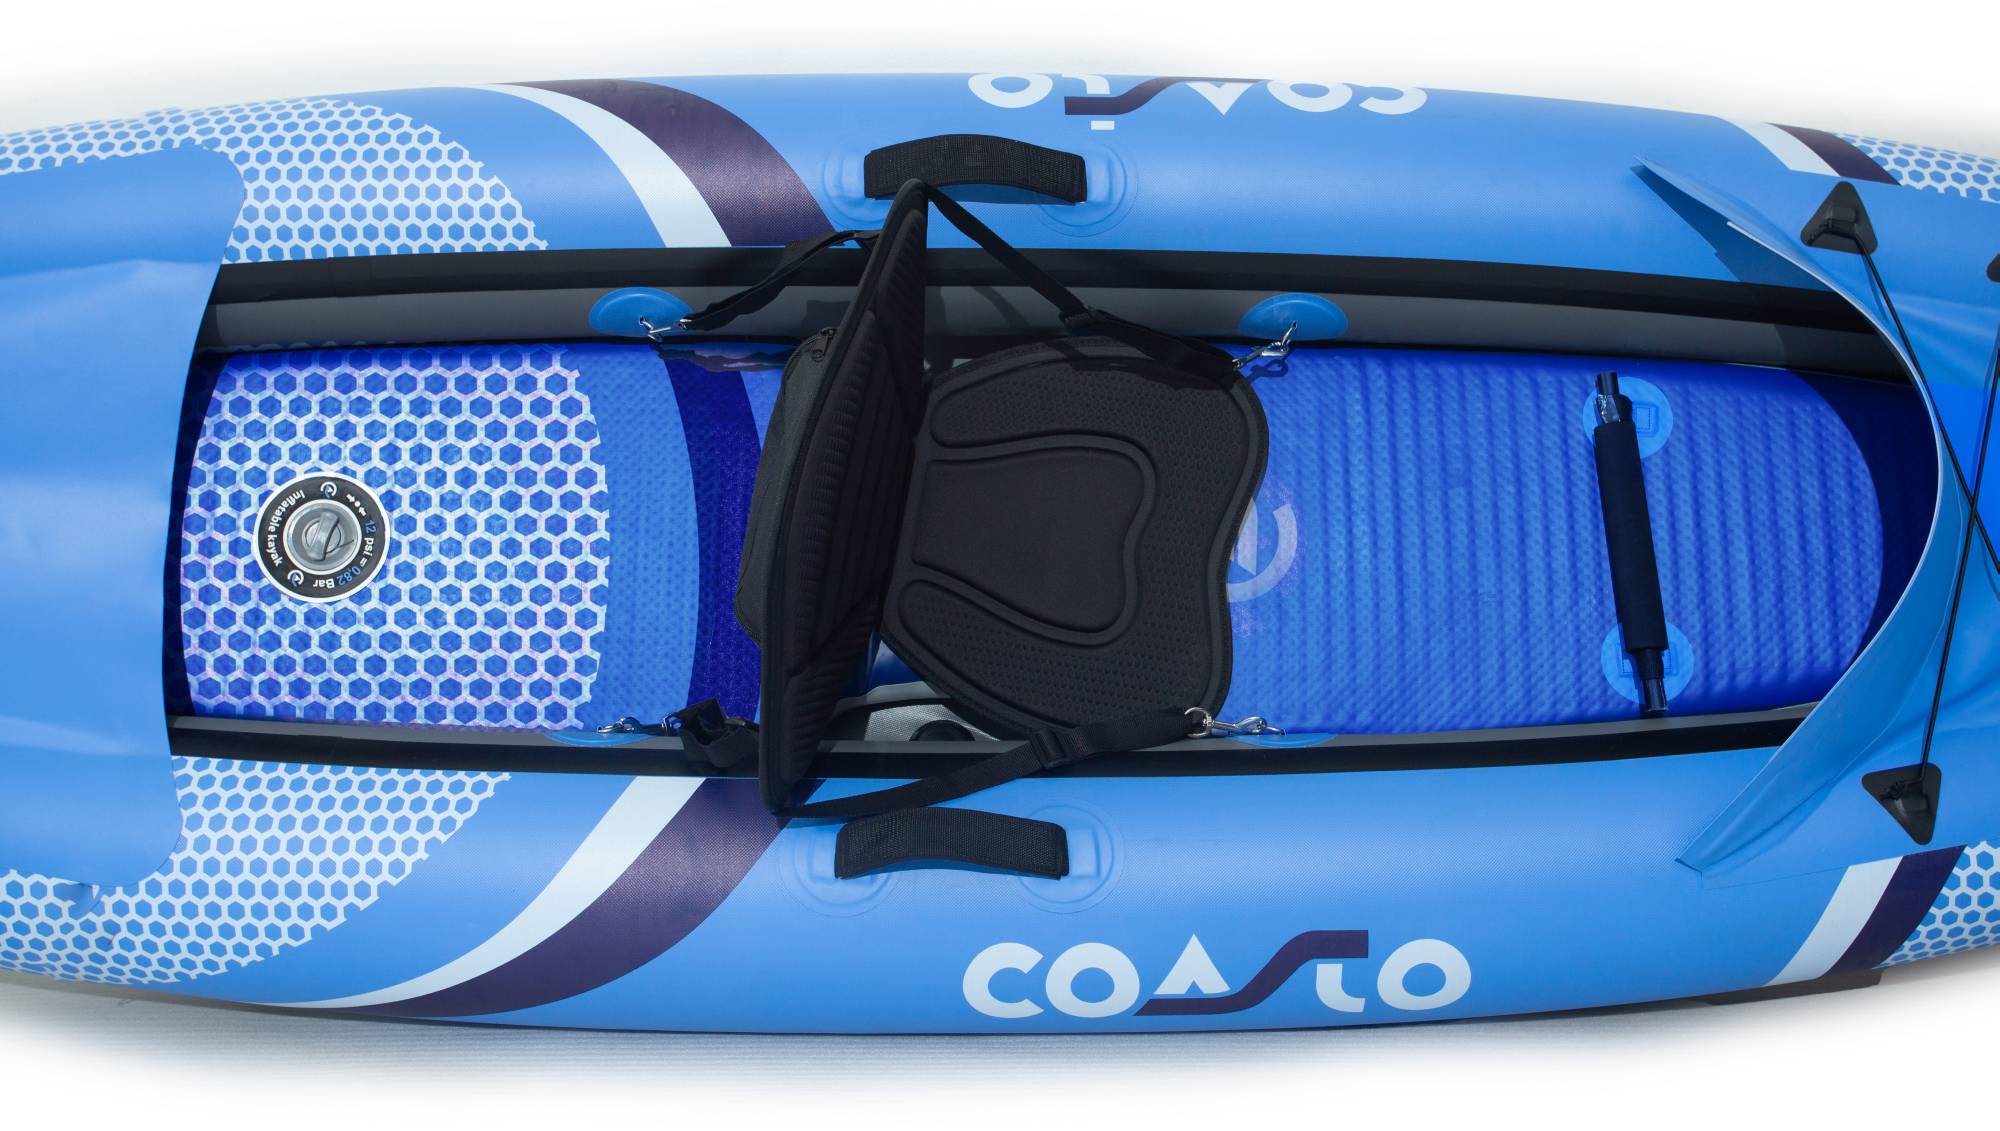 Inflatable kayak